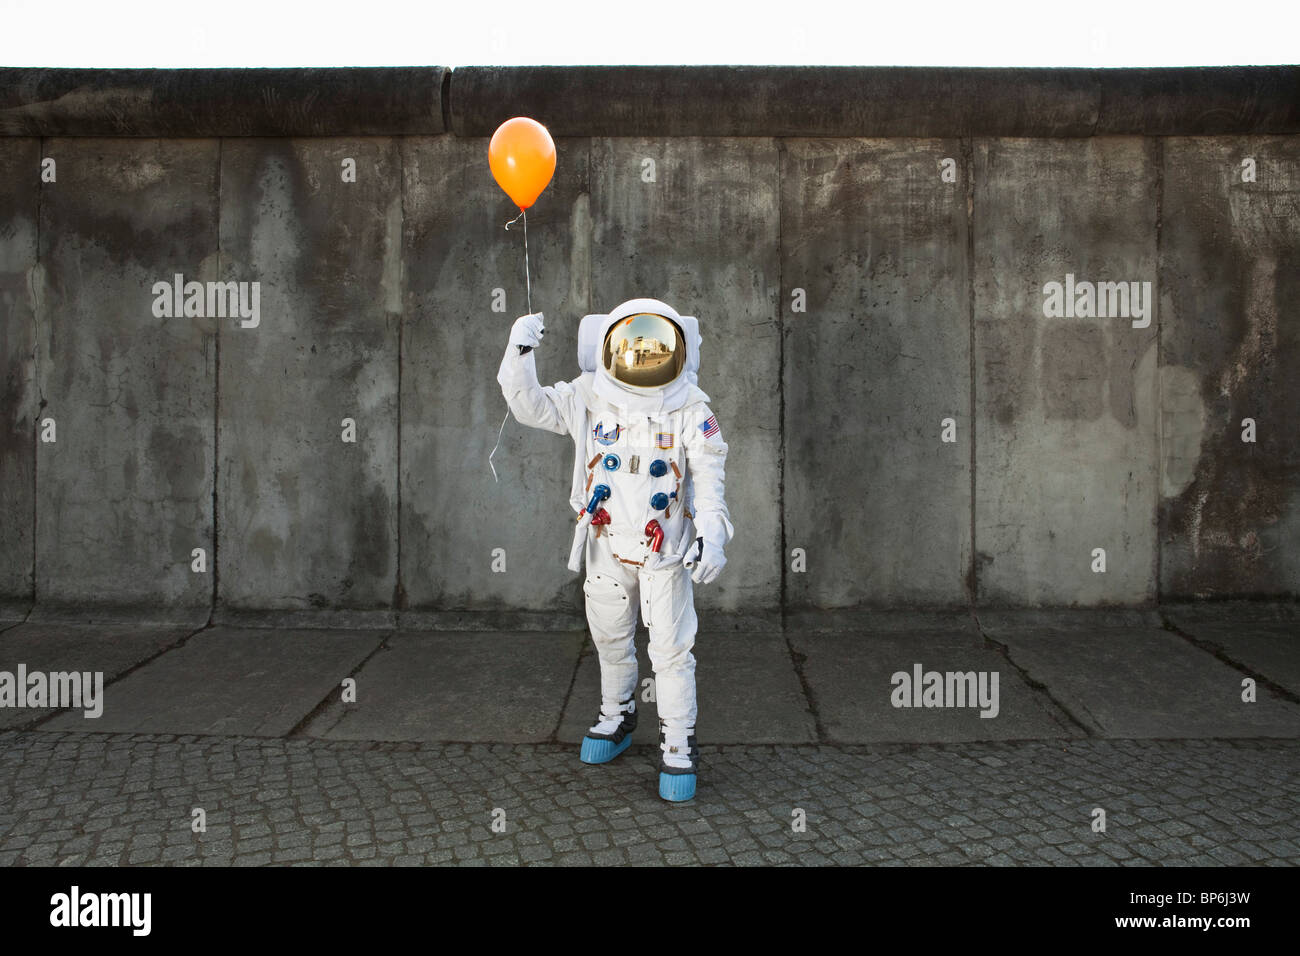 Ein Astronaut auf einer Stadt Bürgersteig mit einem Ballon Stockfoto